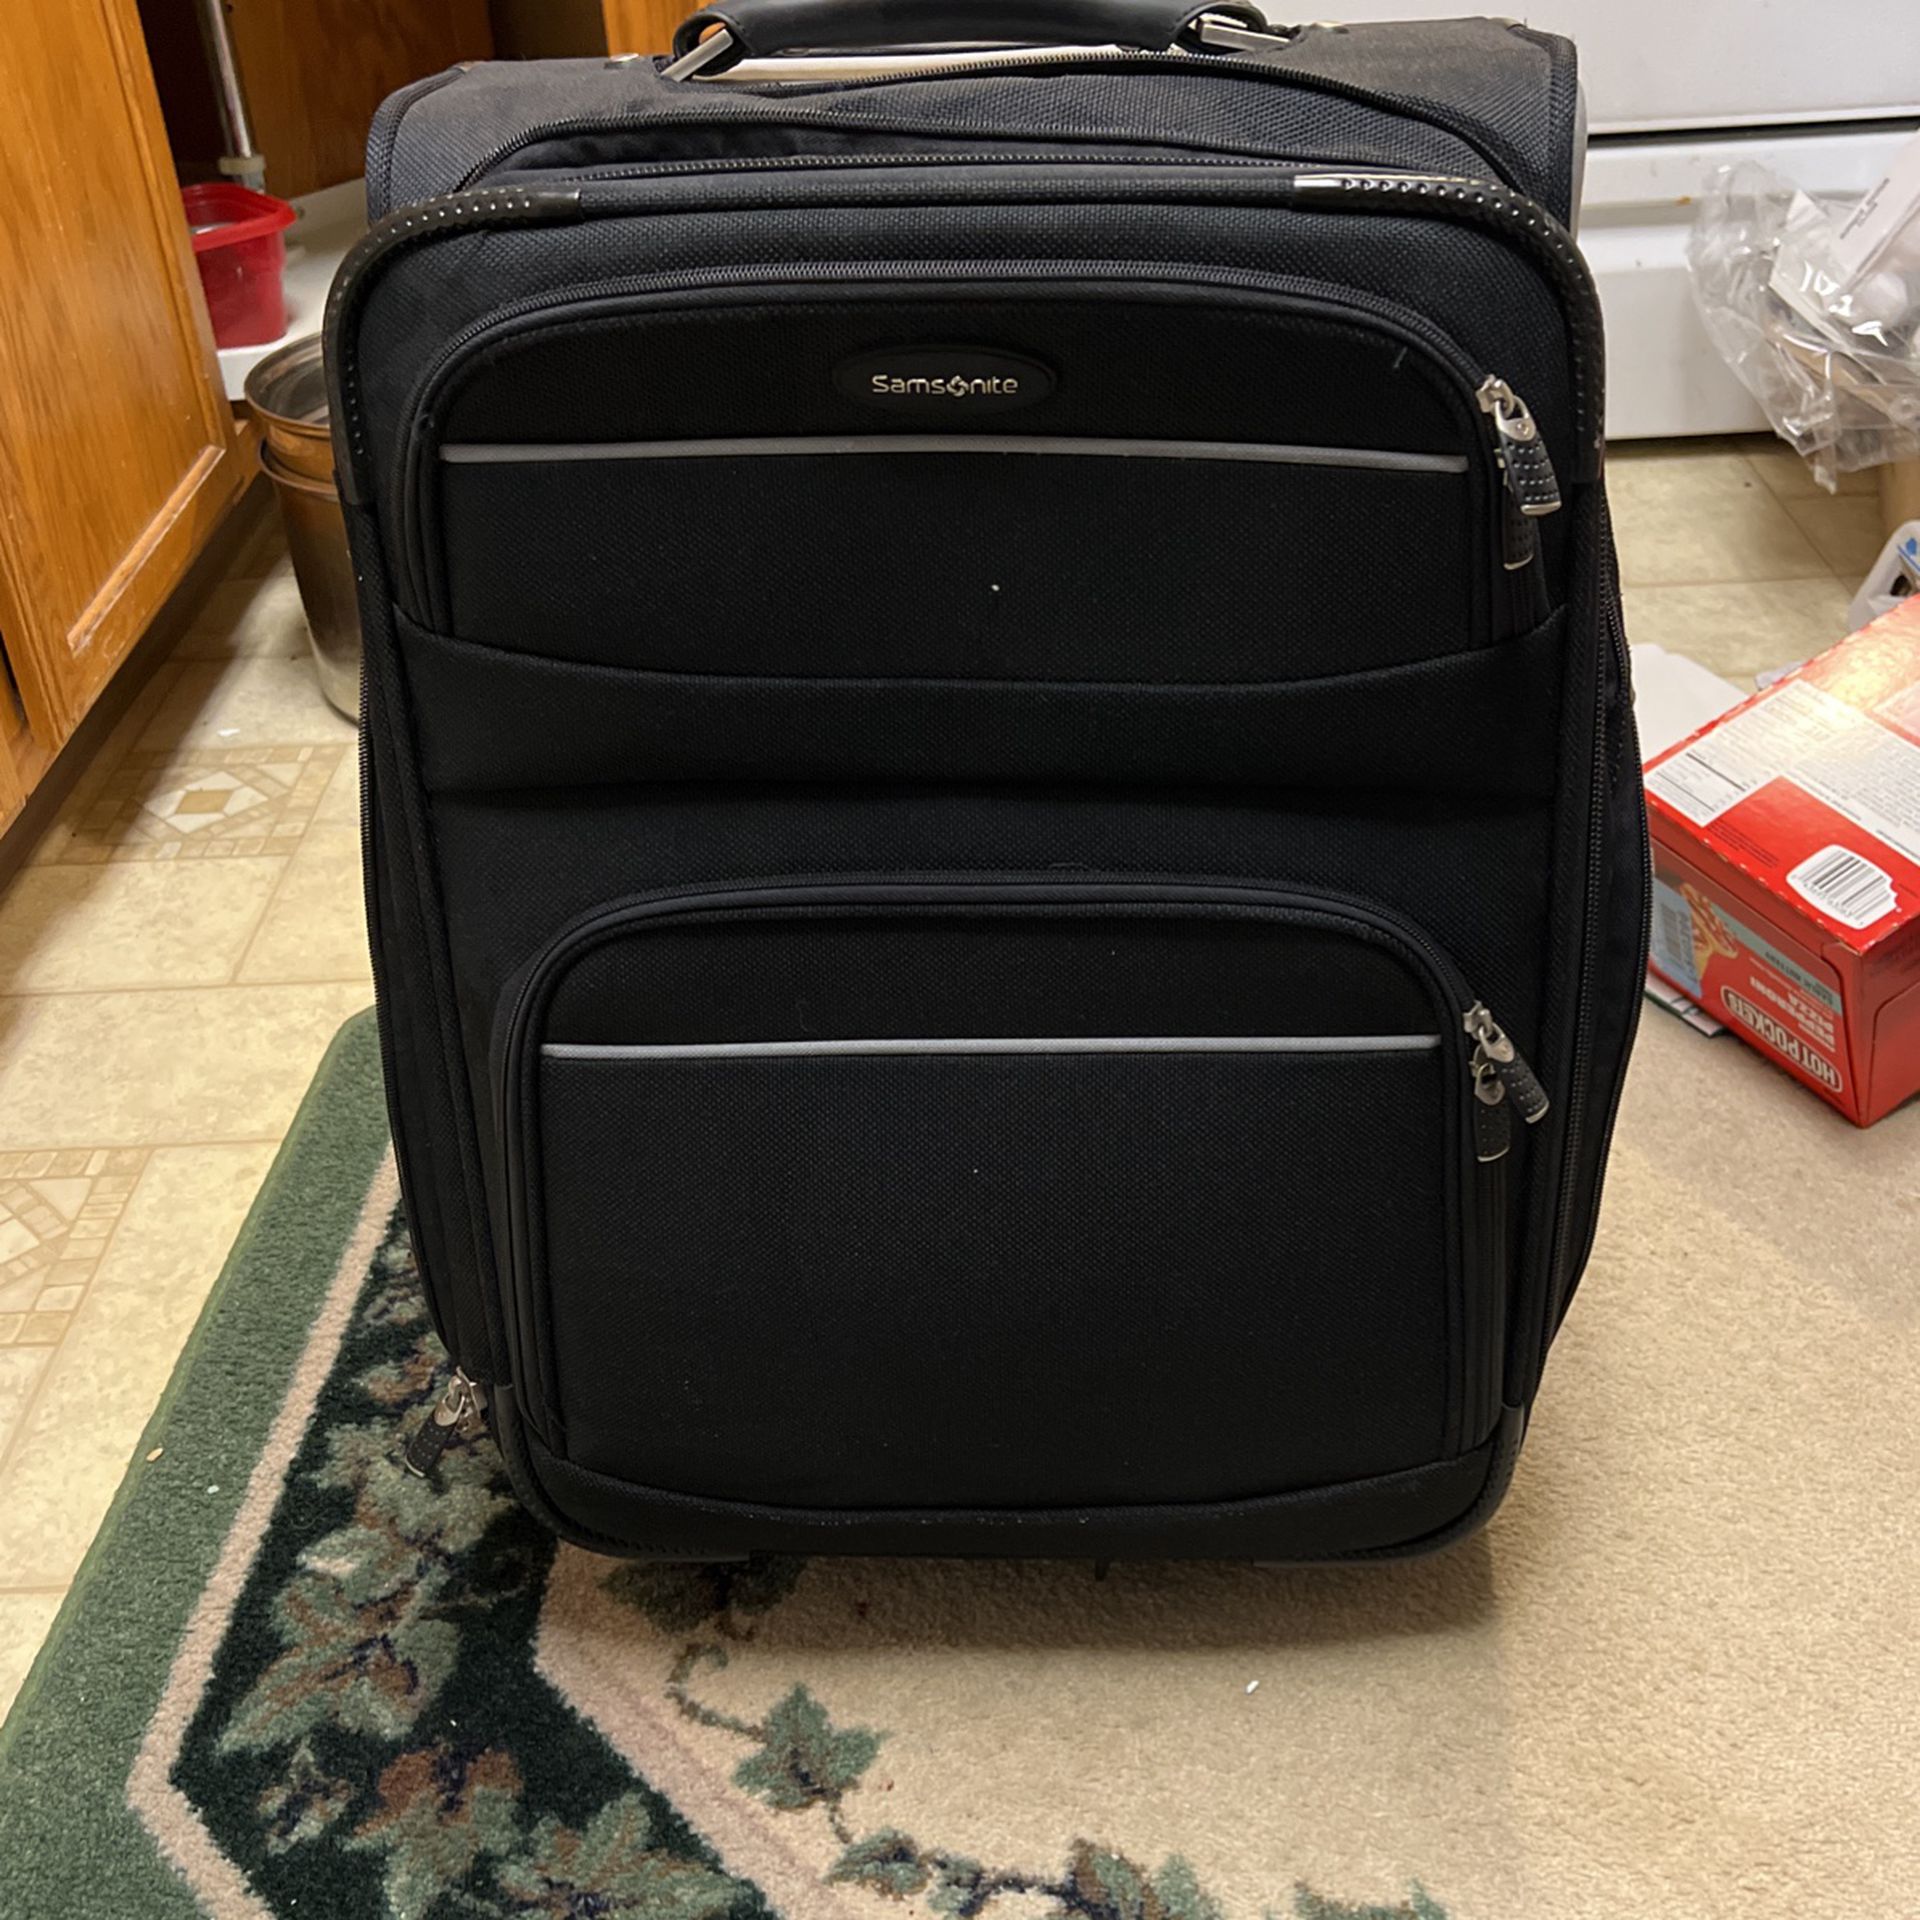 Samsonite Black Suitcase